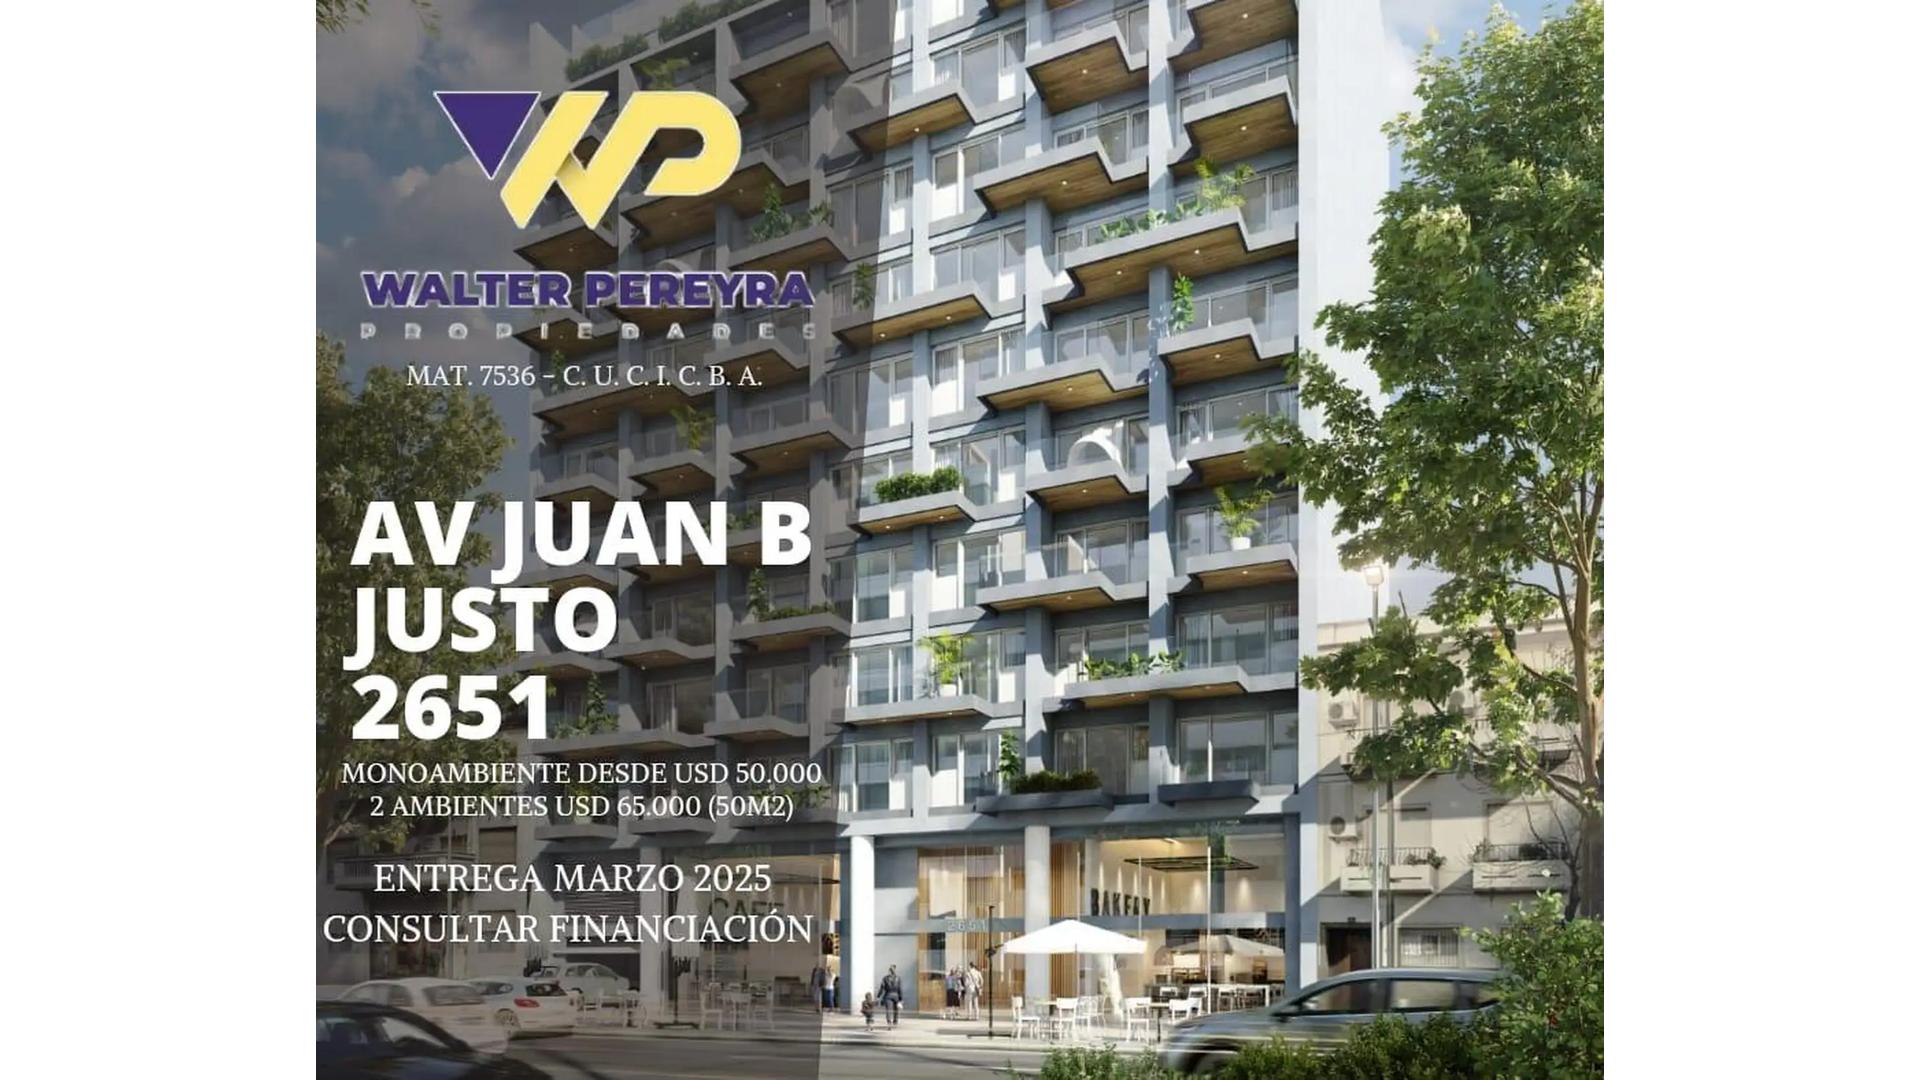 #5147120 | Sale | Apartment | Villa Crespo (Walter Pereyra propiedades)